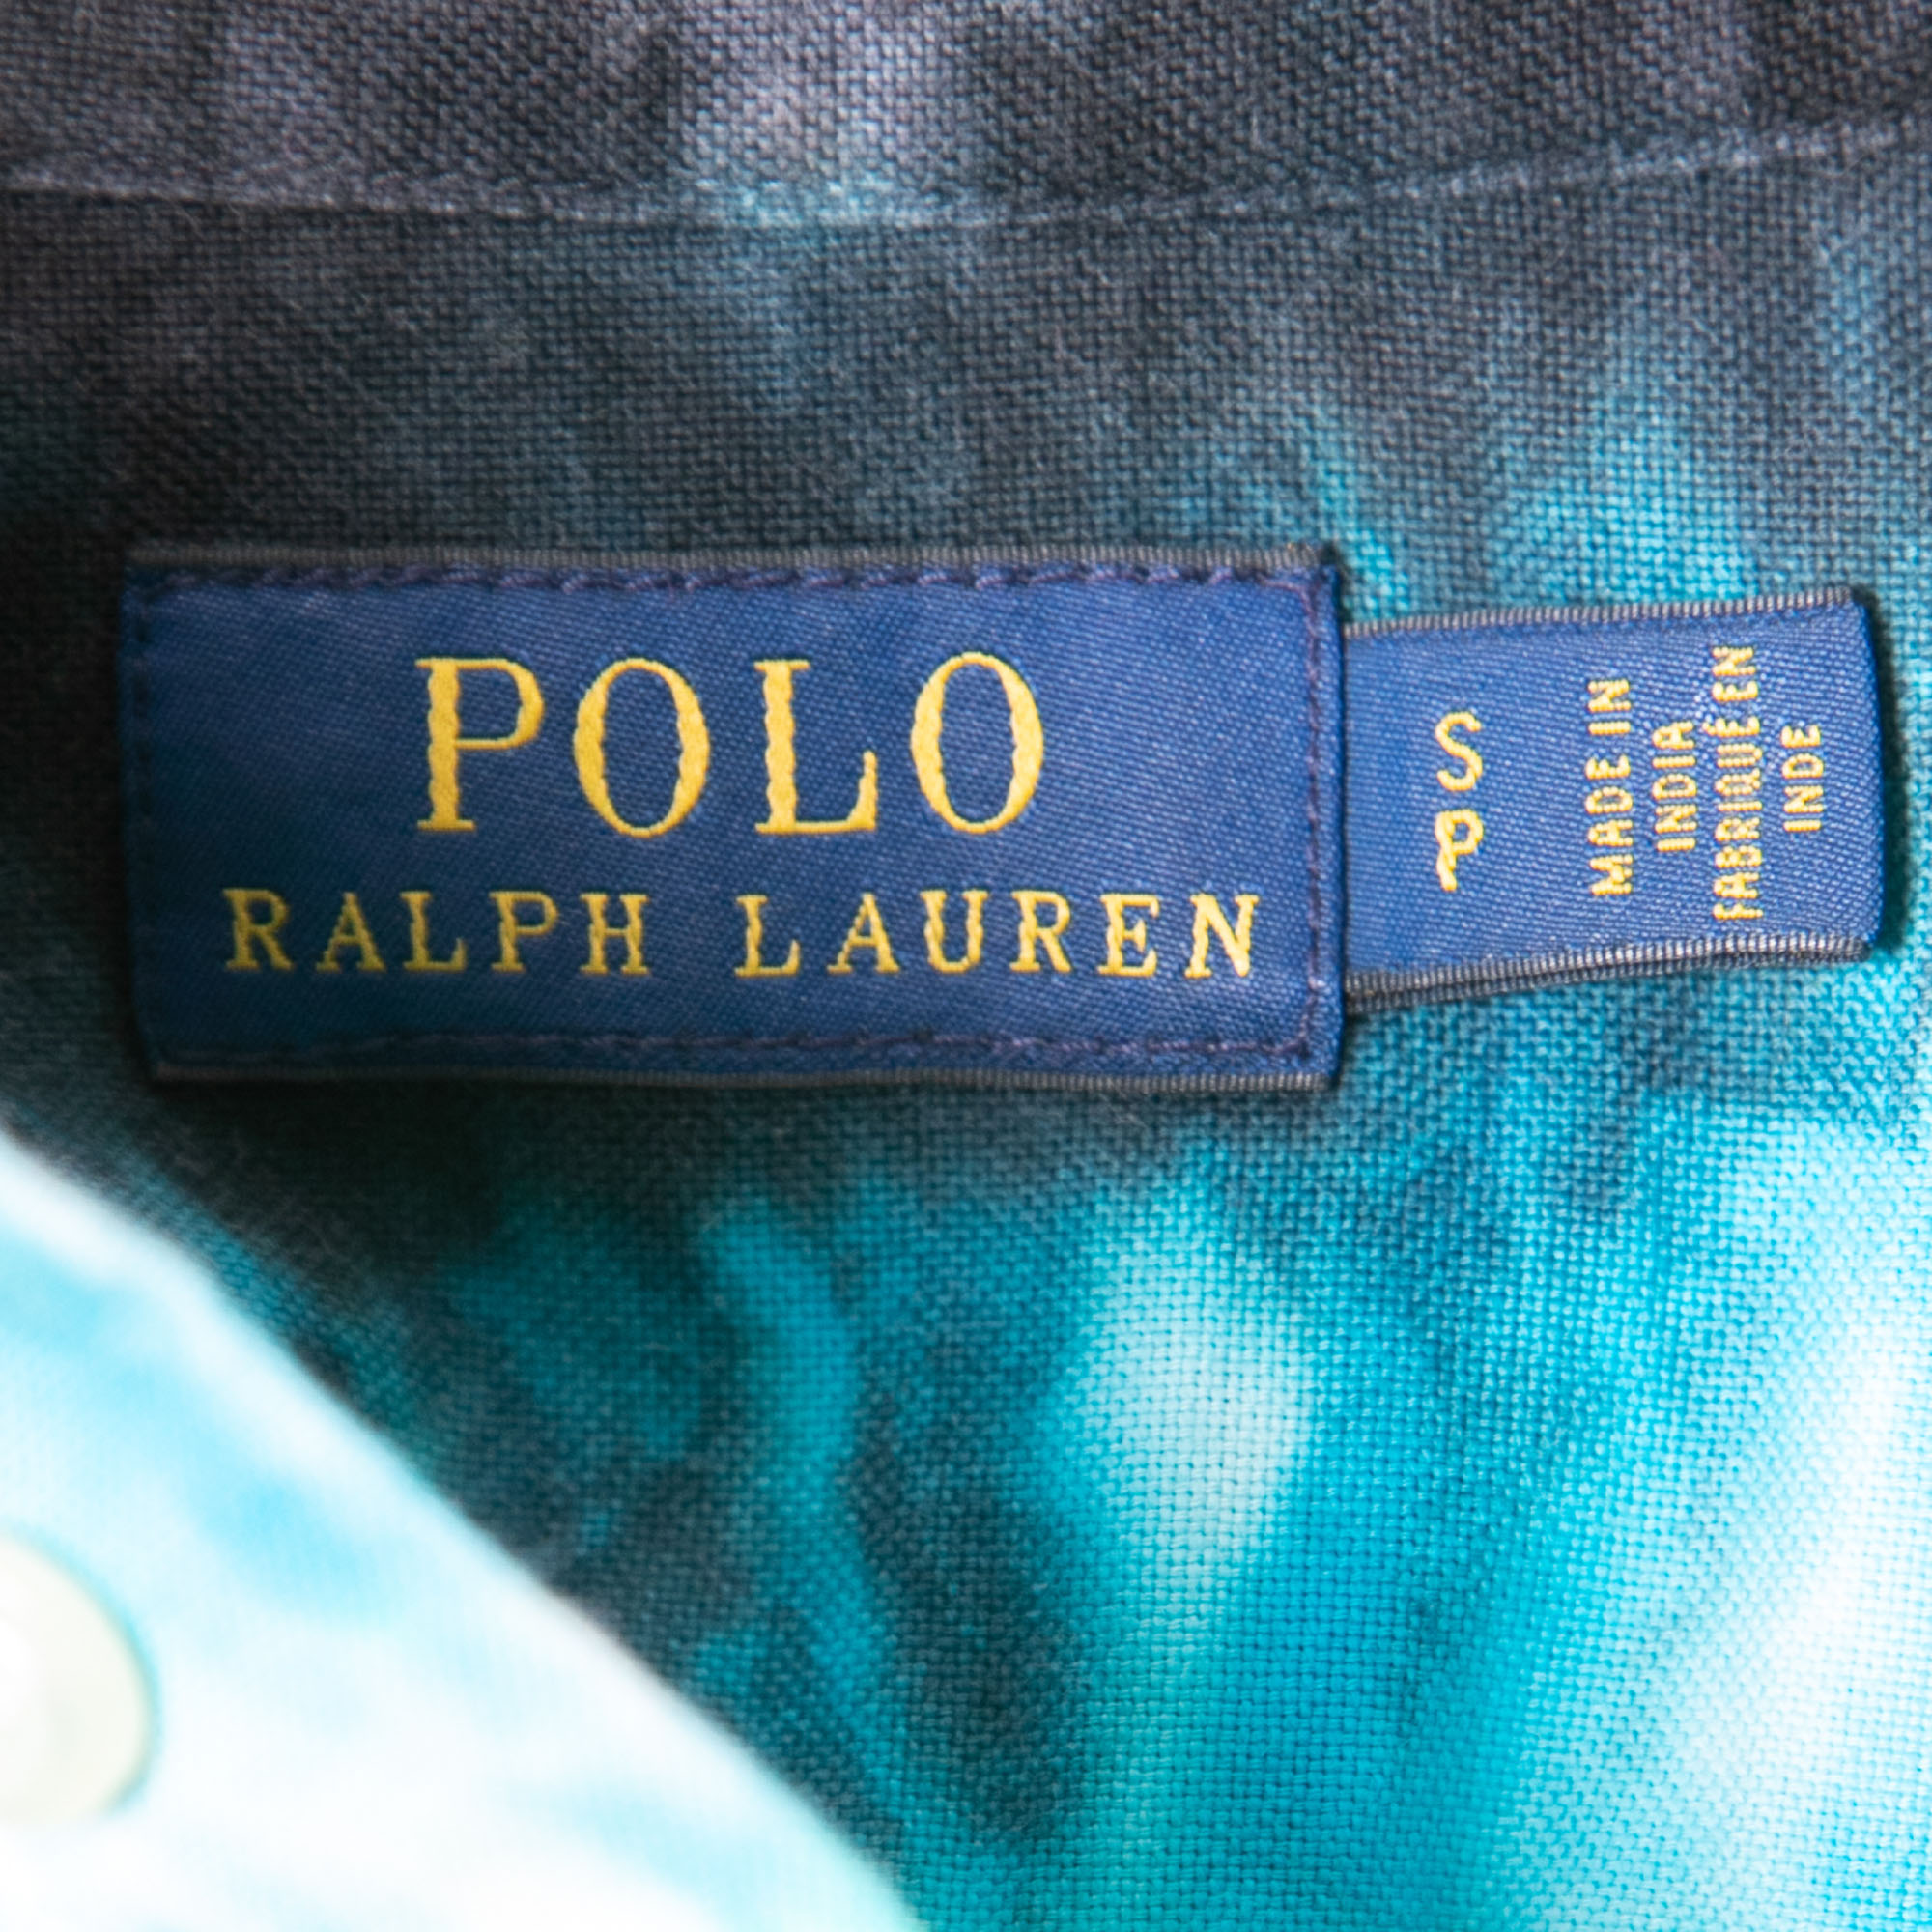 Polo Ralph Lauren Multicolor Cotton Eclipse Tye-Dye Button Front Shirt S